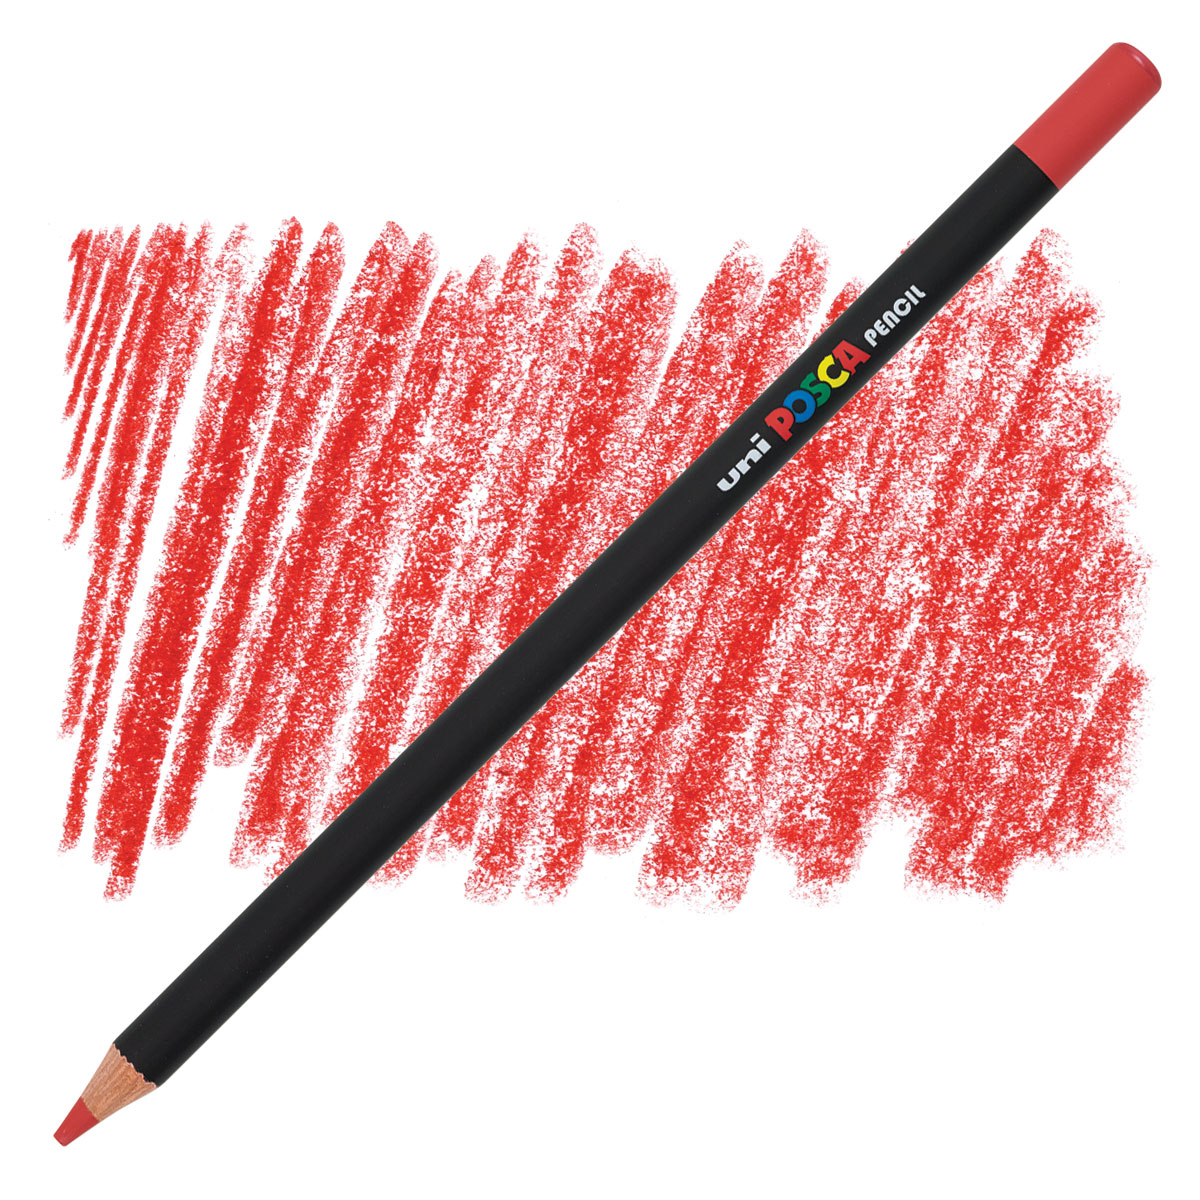 Posca Oil-Based Colored Pencil